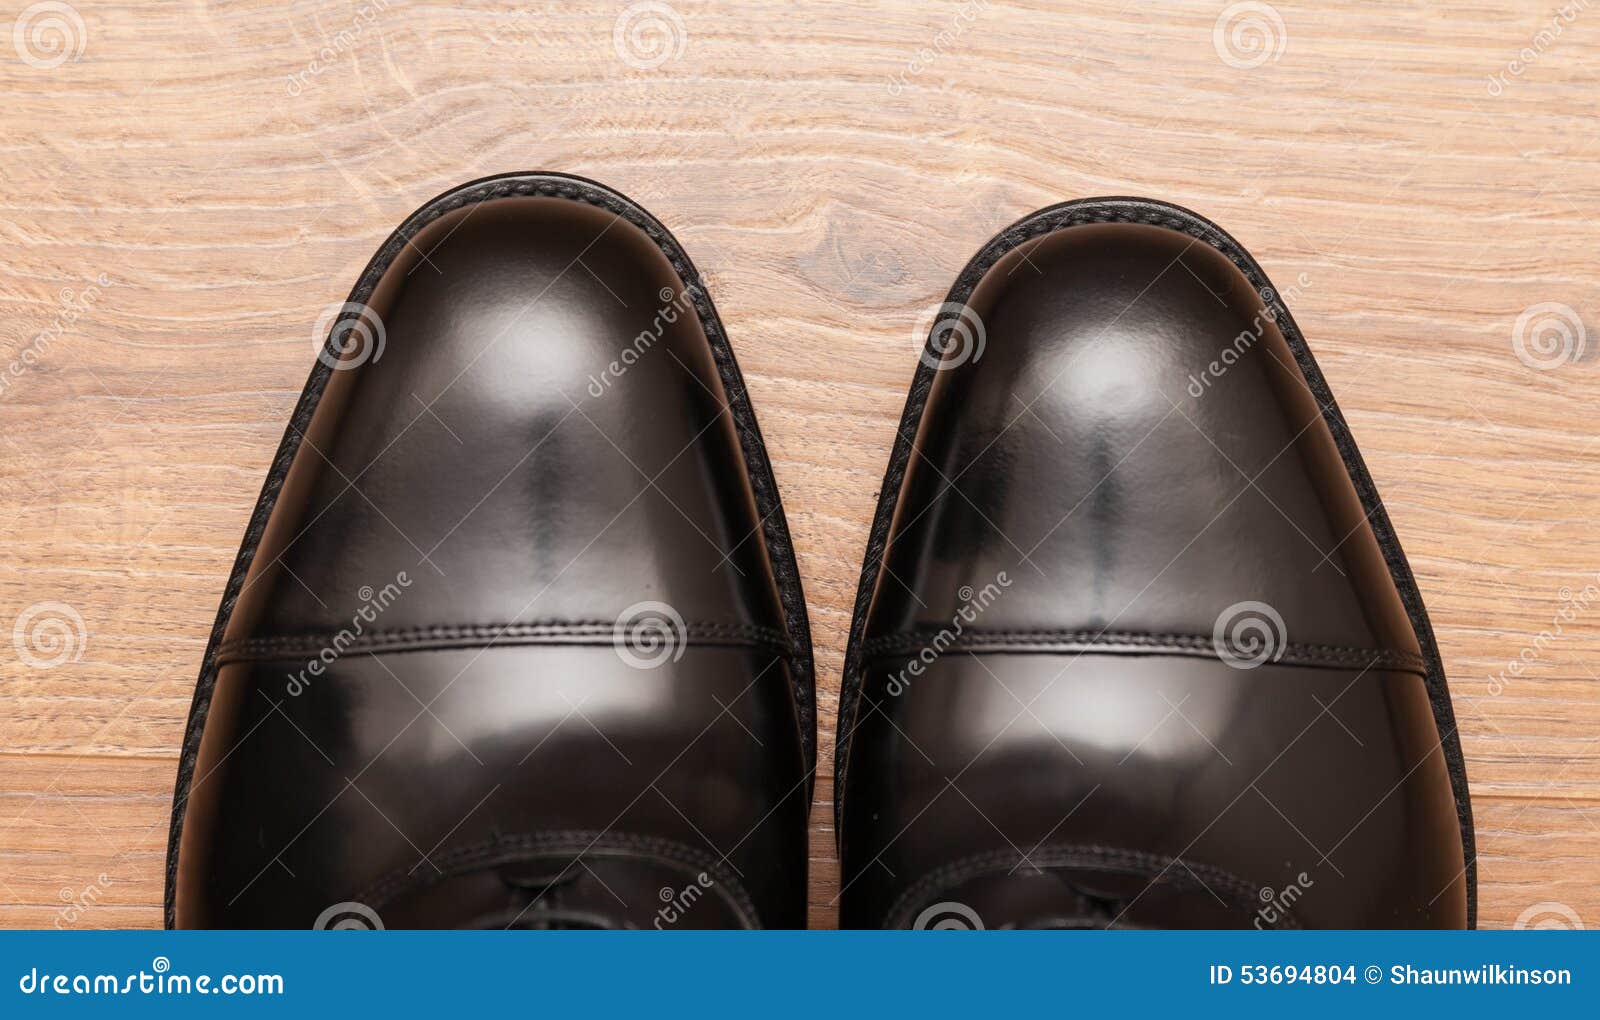 Business Shoes stock photo. Image of shine, shiny, shoe - 53694804